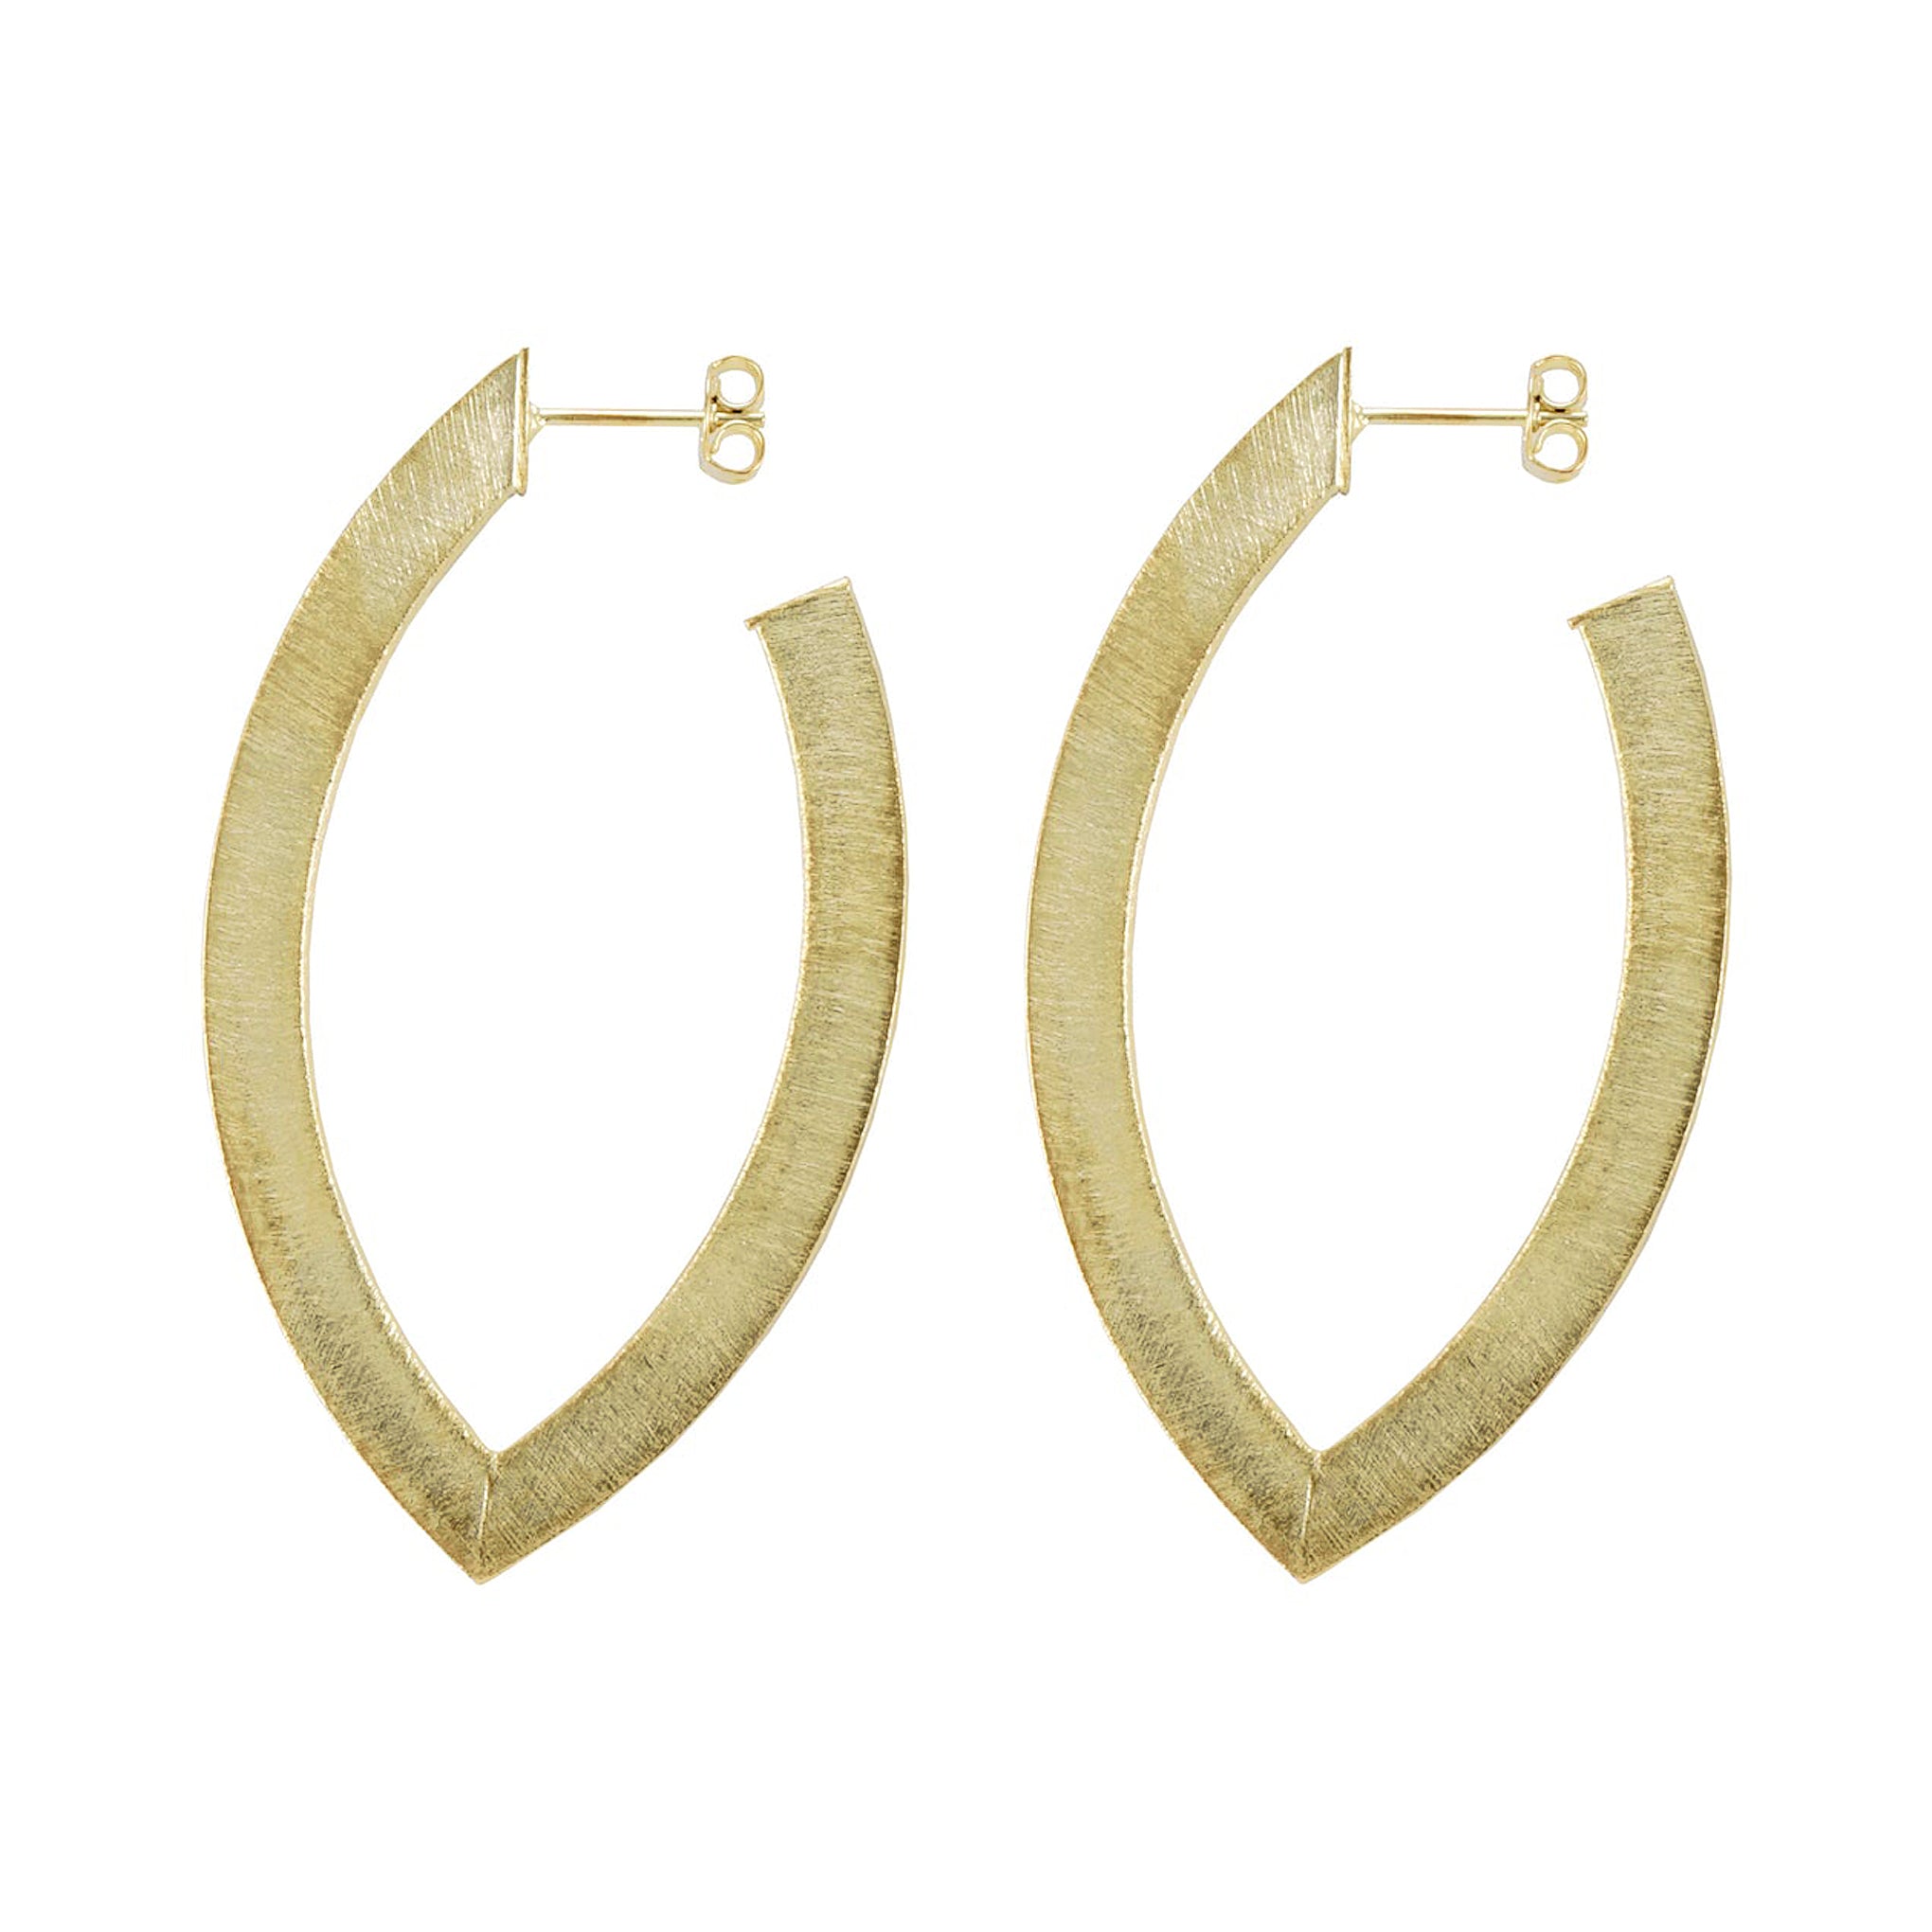 Sheila Fajl Smaller Alba Hoop Earrings in 18k Brushed Gold Plated